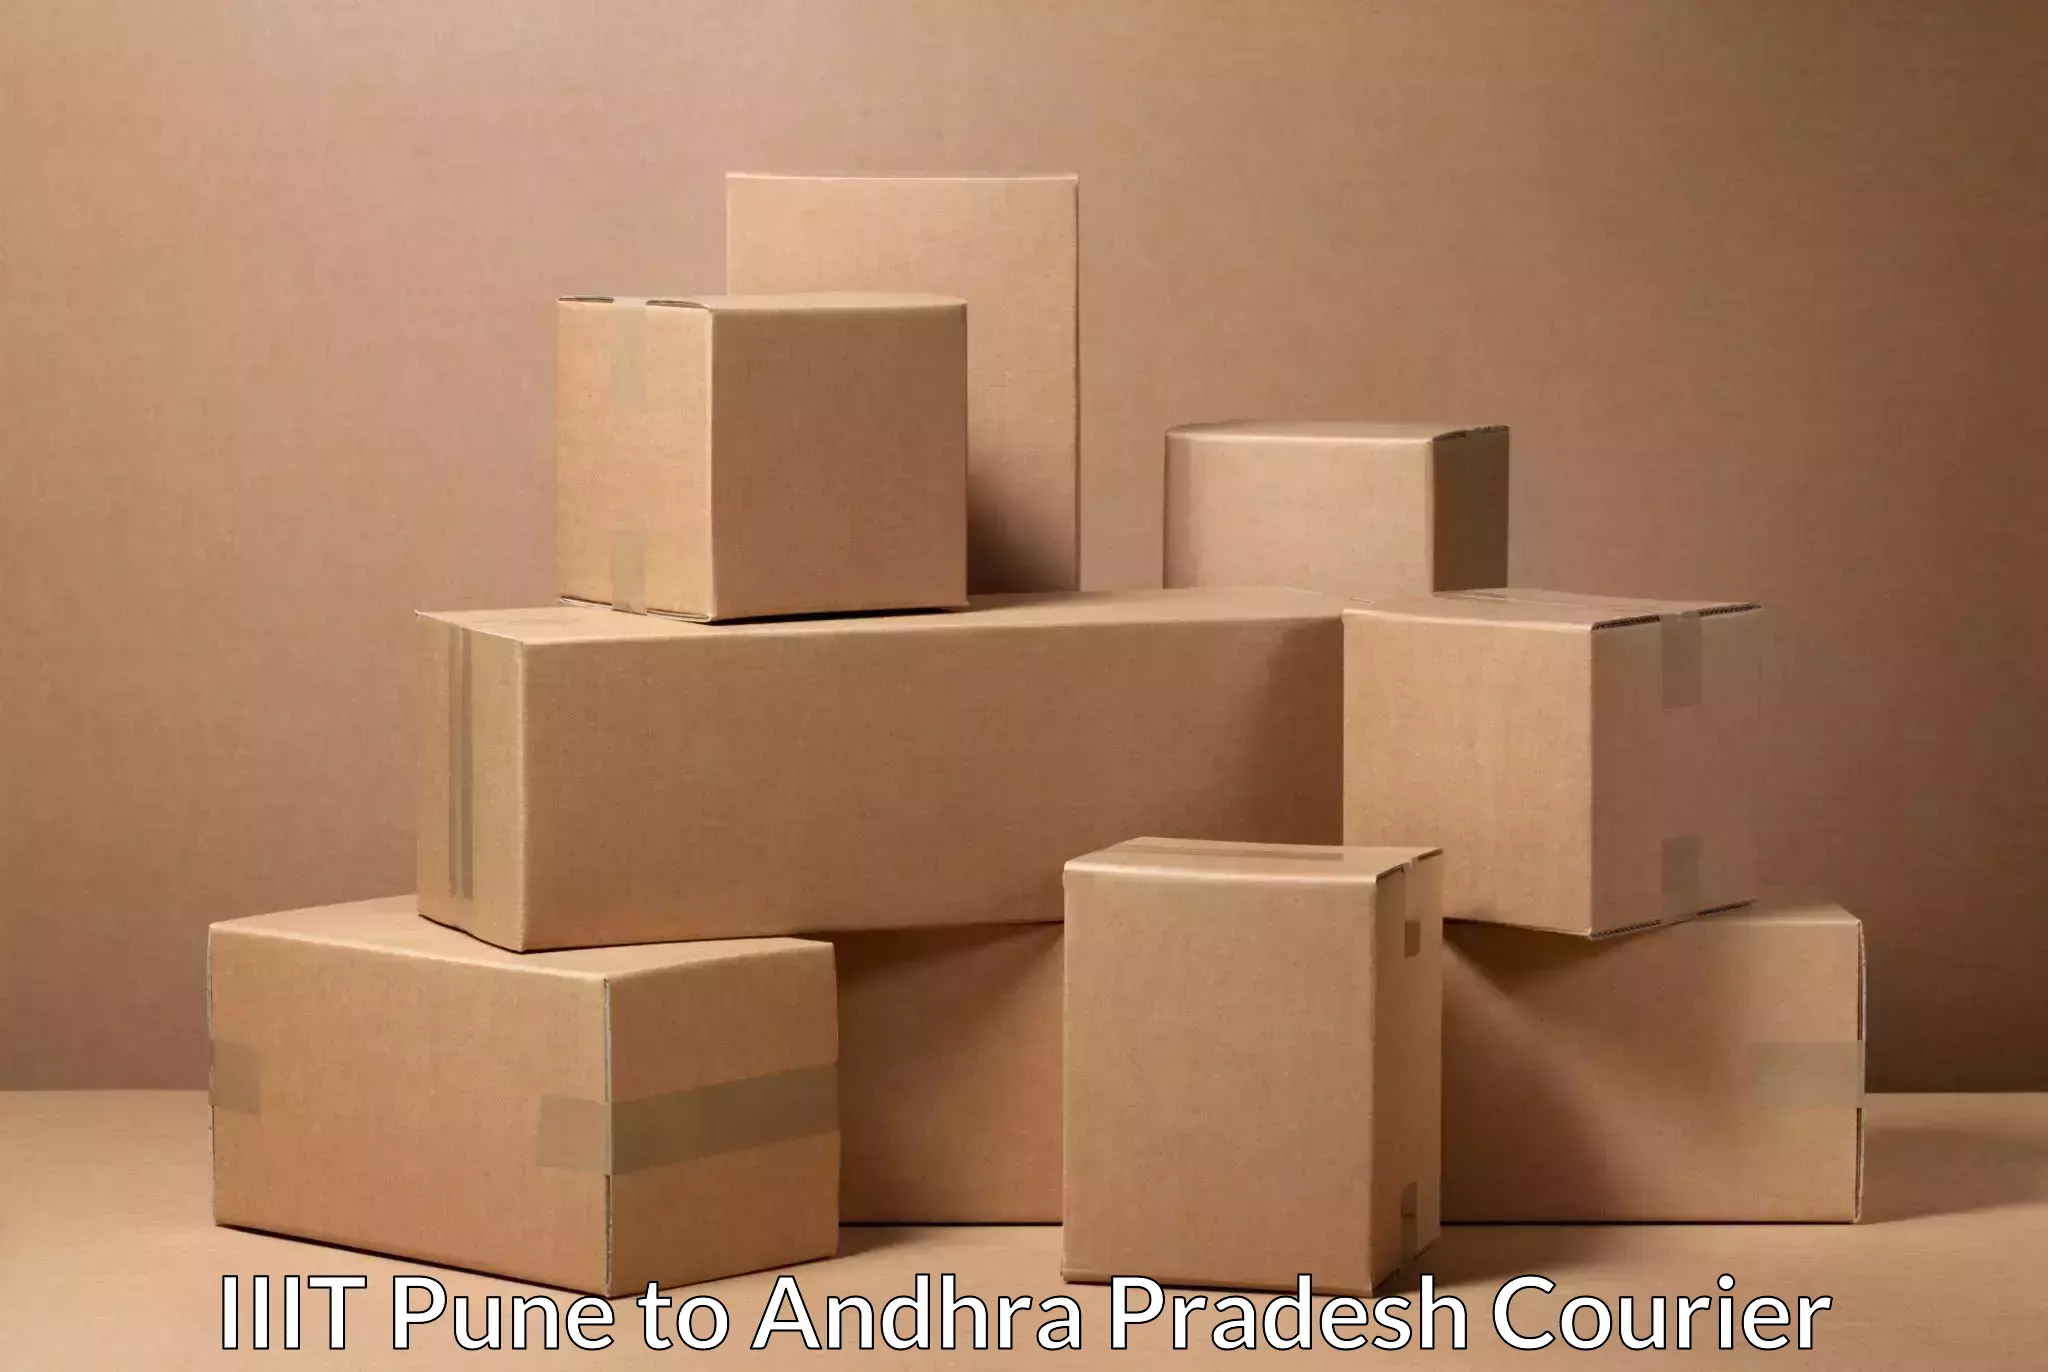 Flexible parcel services IIIT Pune to Bondapalli